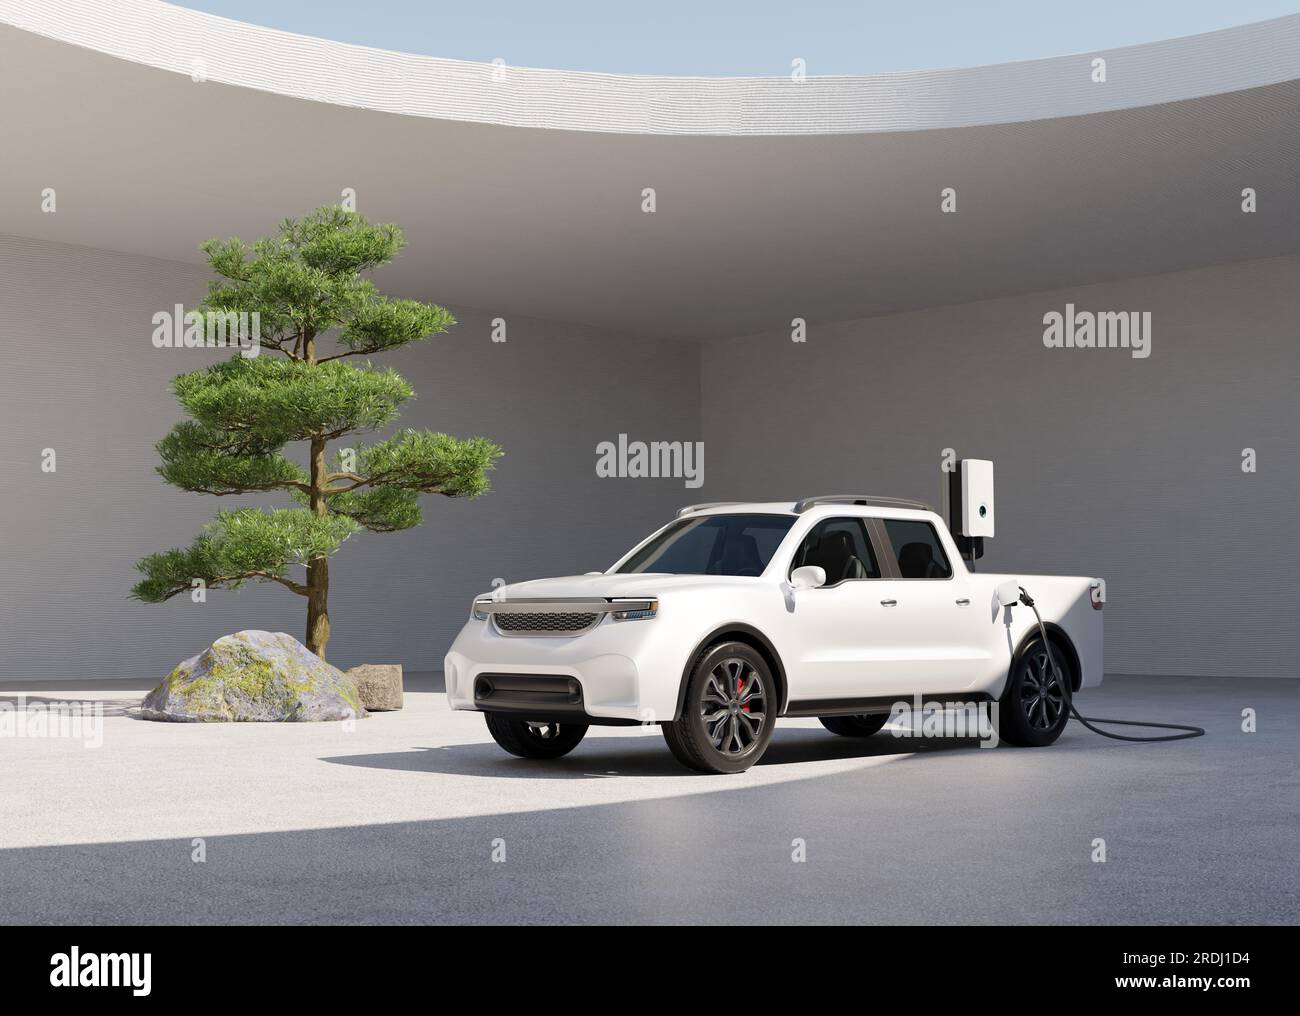 Camionnette électrique blanche chargeant dans la cour de style jardin zen japonais. Conception générique. Image de rendu 3D. Banque D'Images